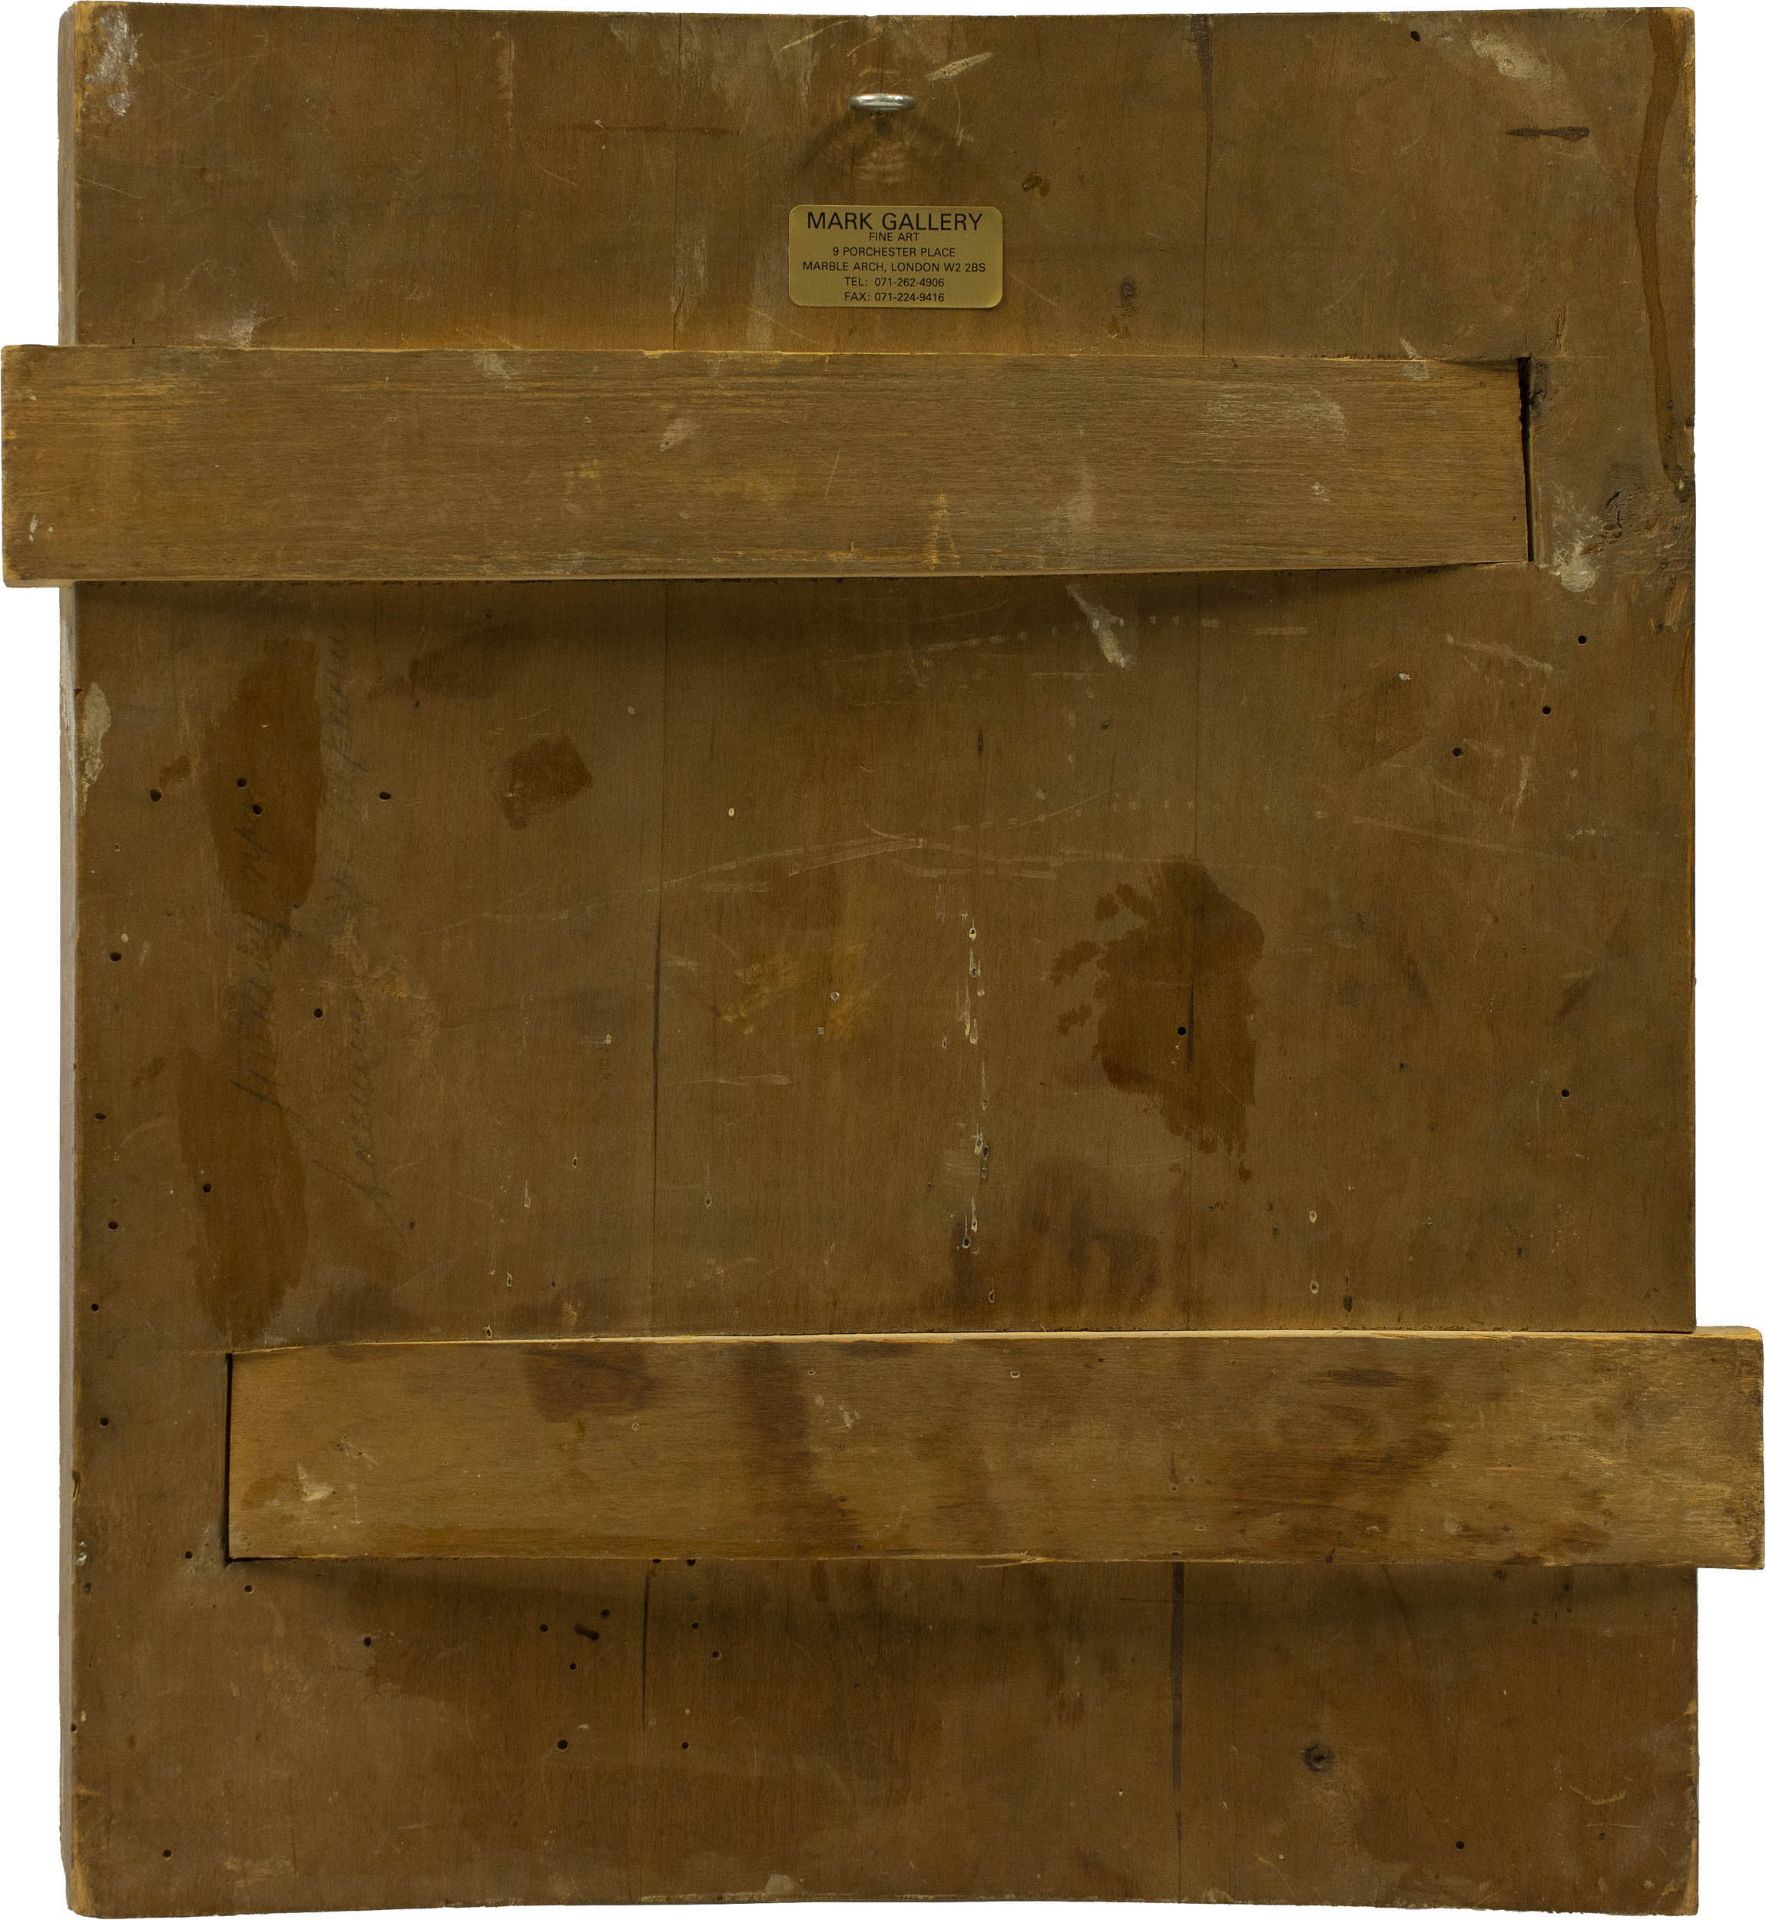 Ikone 'Heiliger Nikolaus'Zentralrussland, 19. Jahrhundert, Tempera auf Holz, 35,5 cm x 30,5 cm, - Bild 3 aus 3